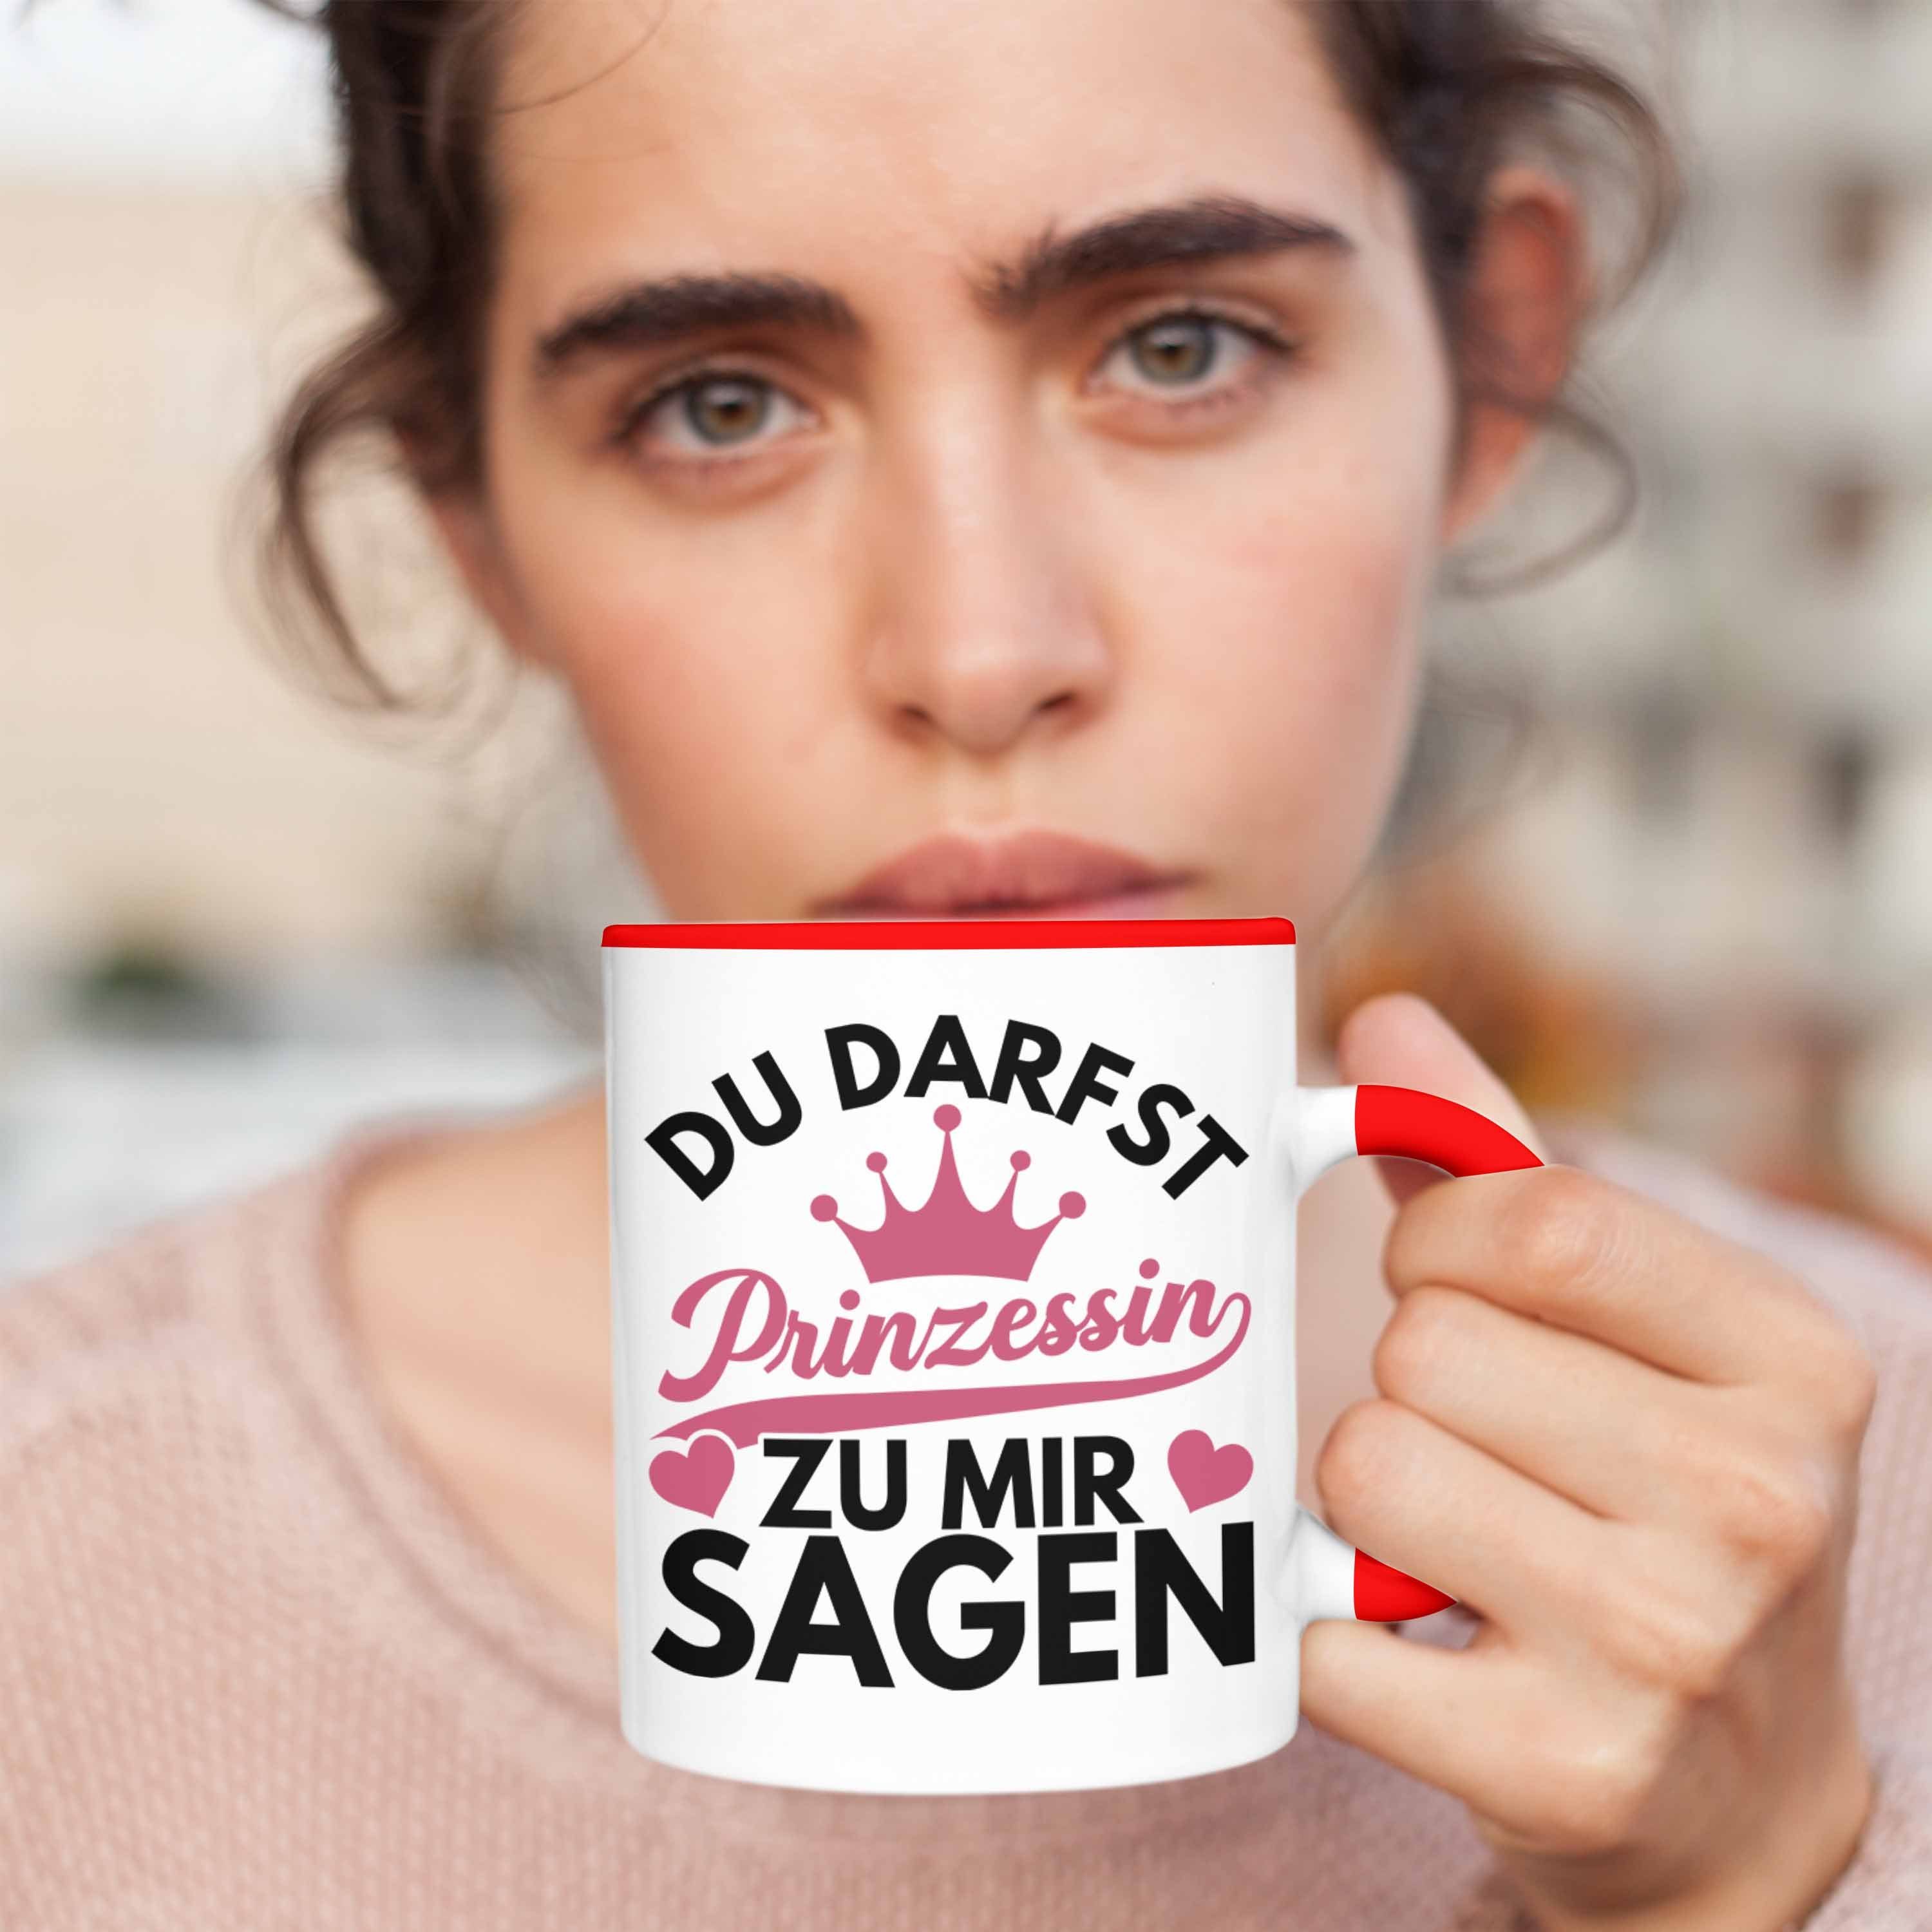 Trendation Sagen Teenager Zicke Darfst Mir Geschenk Zu Trendation Lustiges Tasse Du Tasse Mädchen Rot Jugendliche - Geschenk Prinzessin